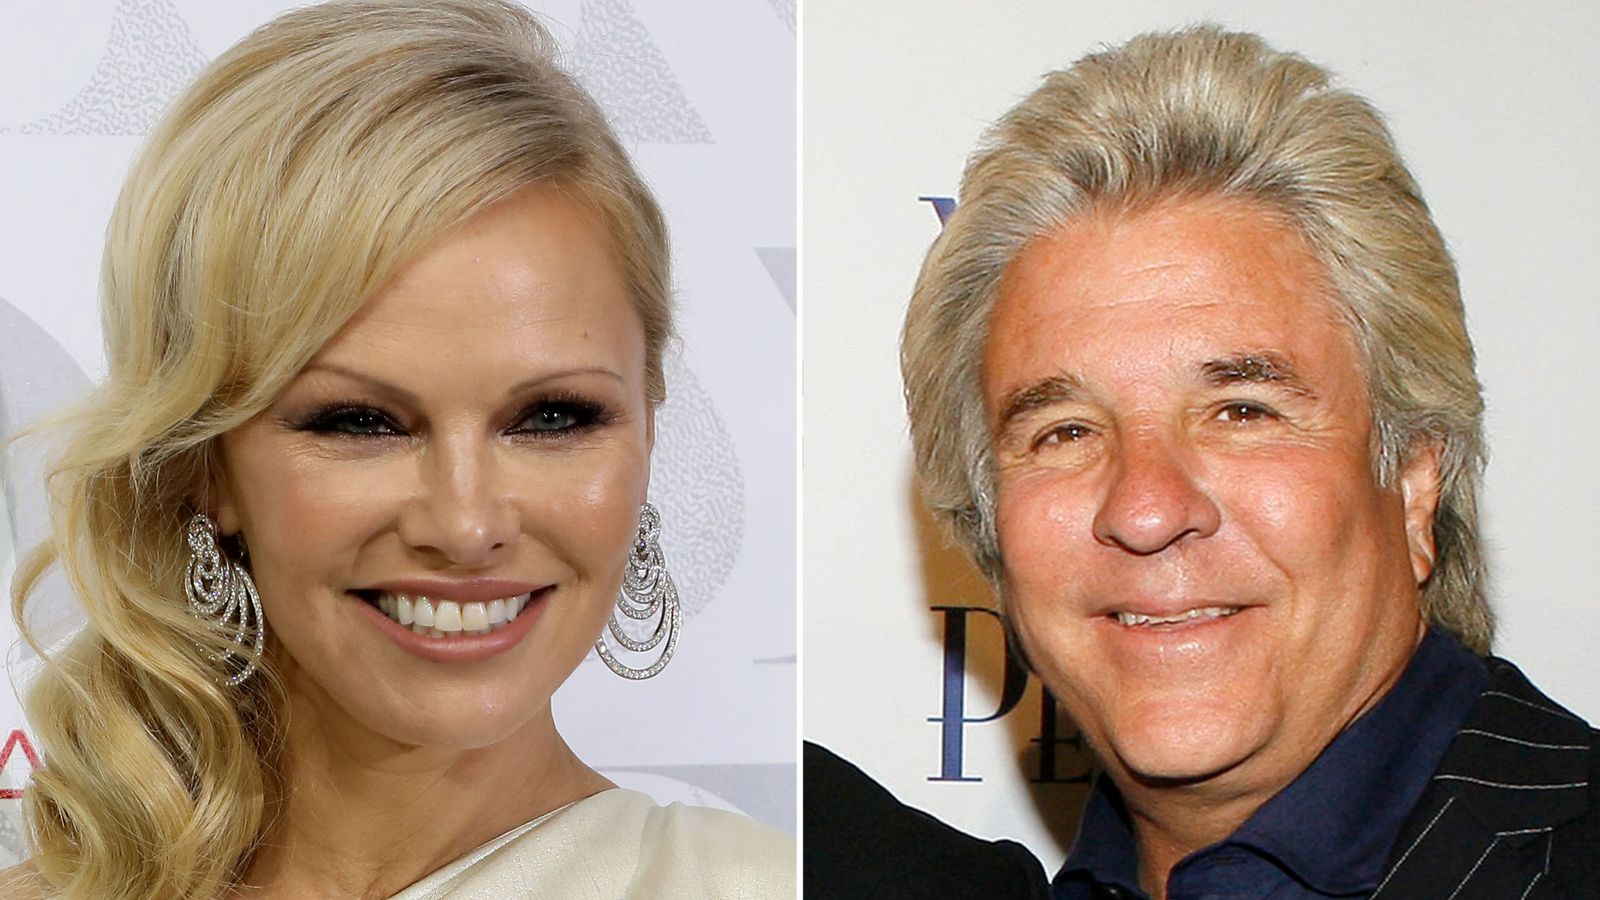 Jon Peters paid Pamela Anderson’s debts before marriage